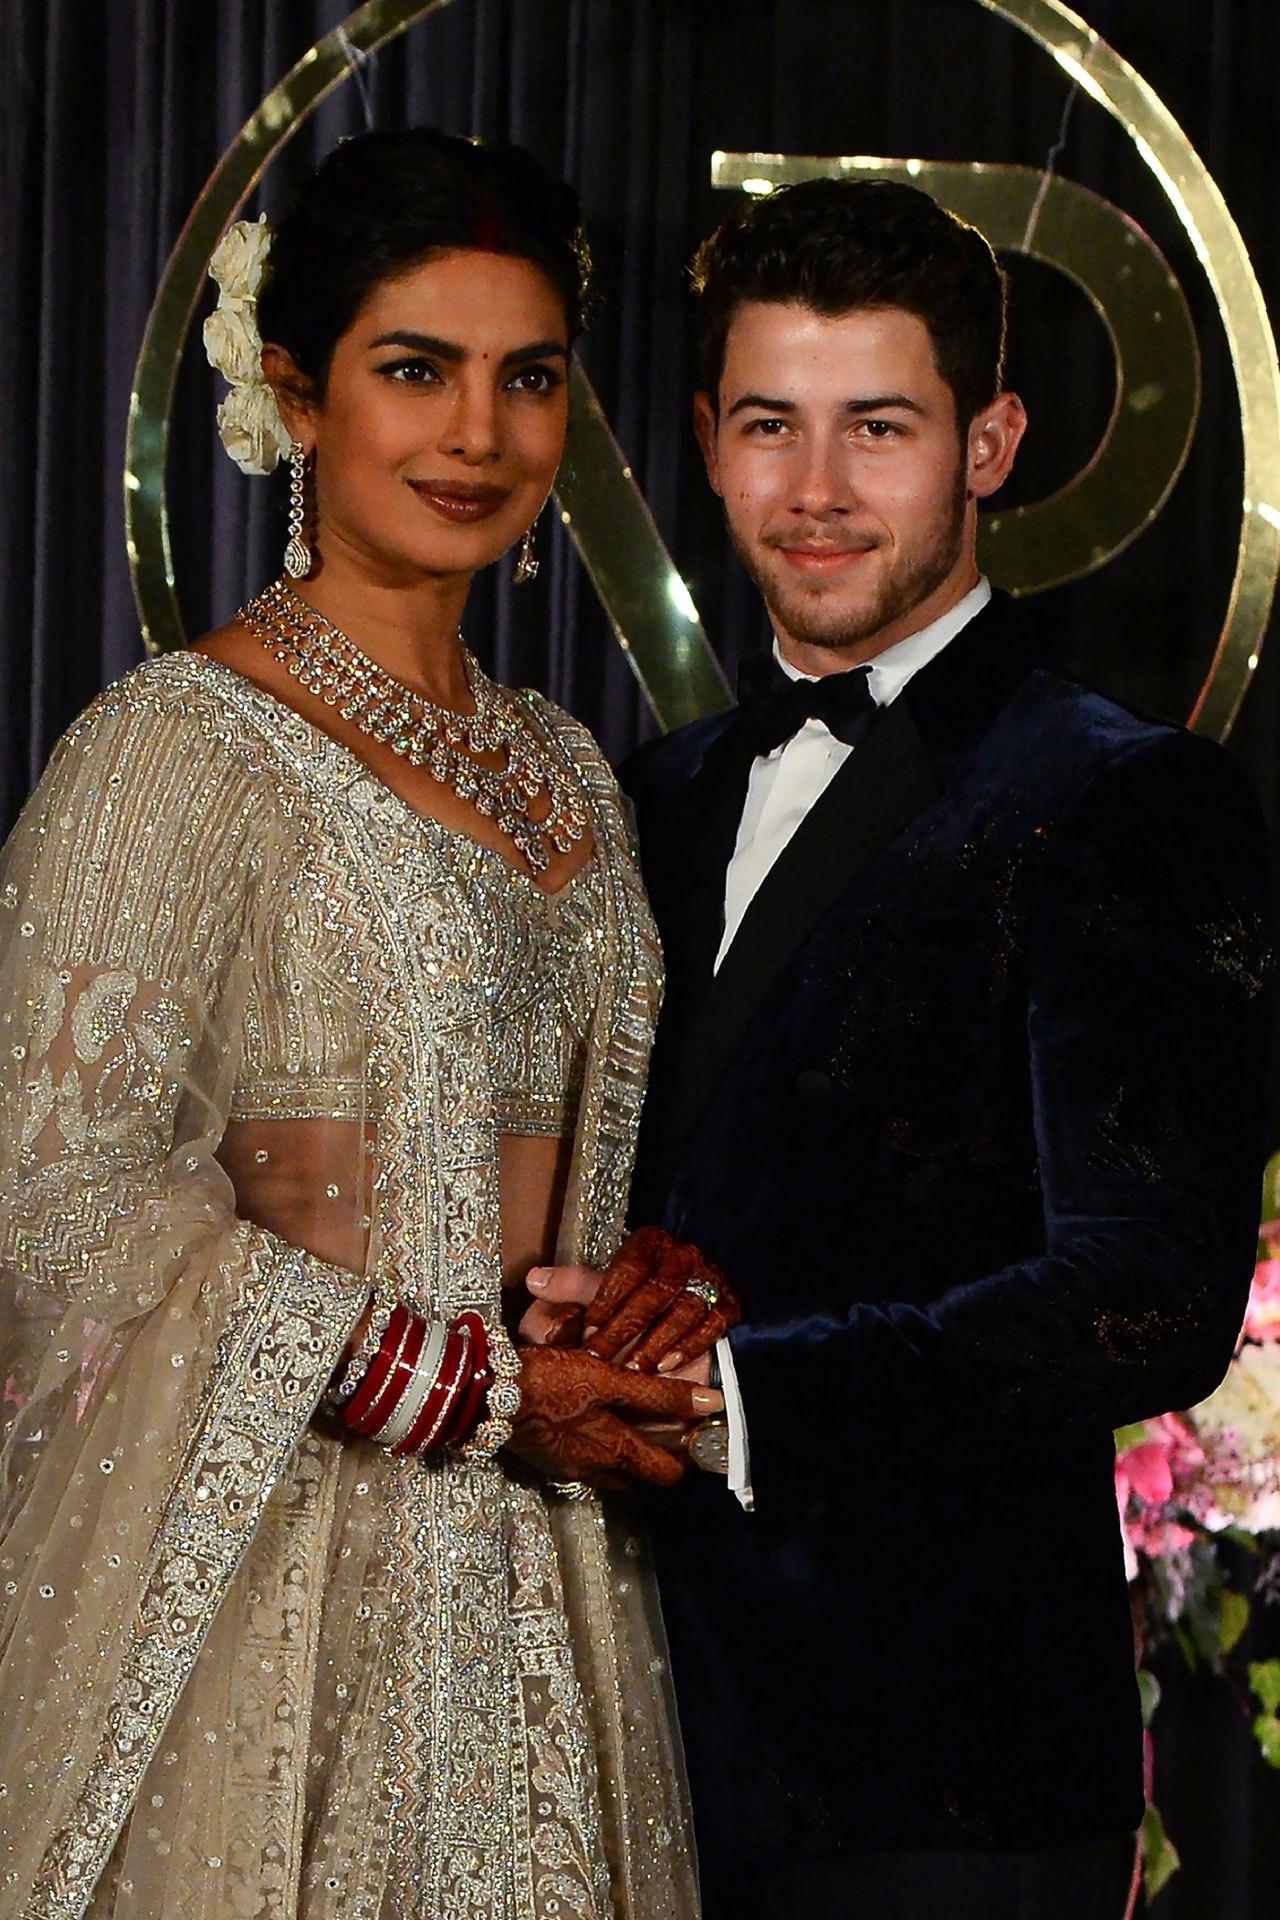 Priyanka Chopra and Nick Jonas wedding: Paul Kevin Jonas to play a